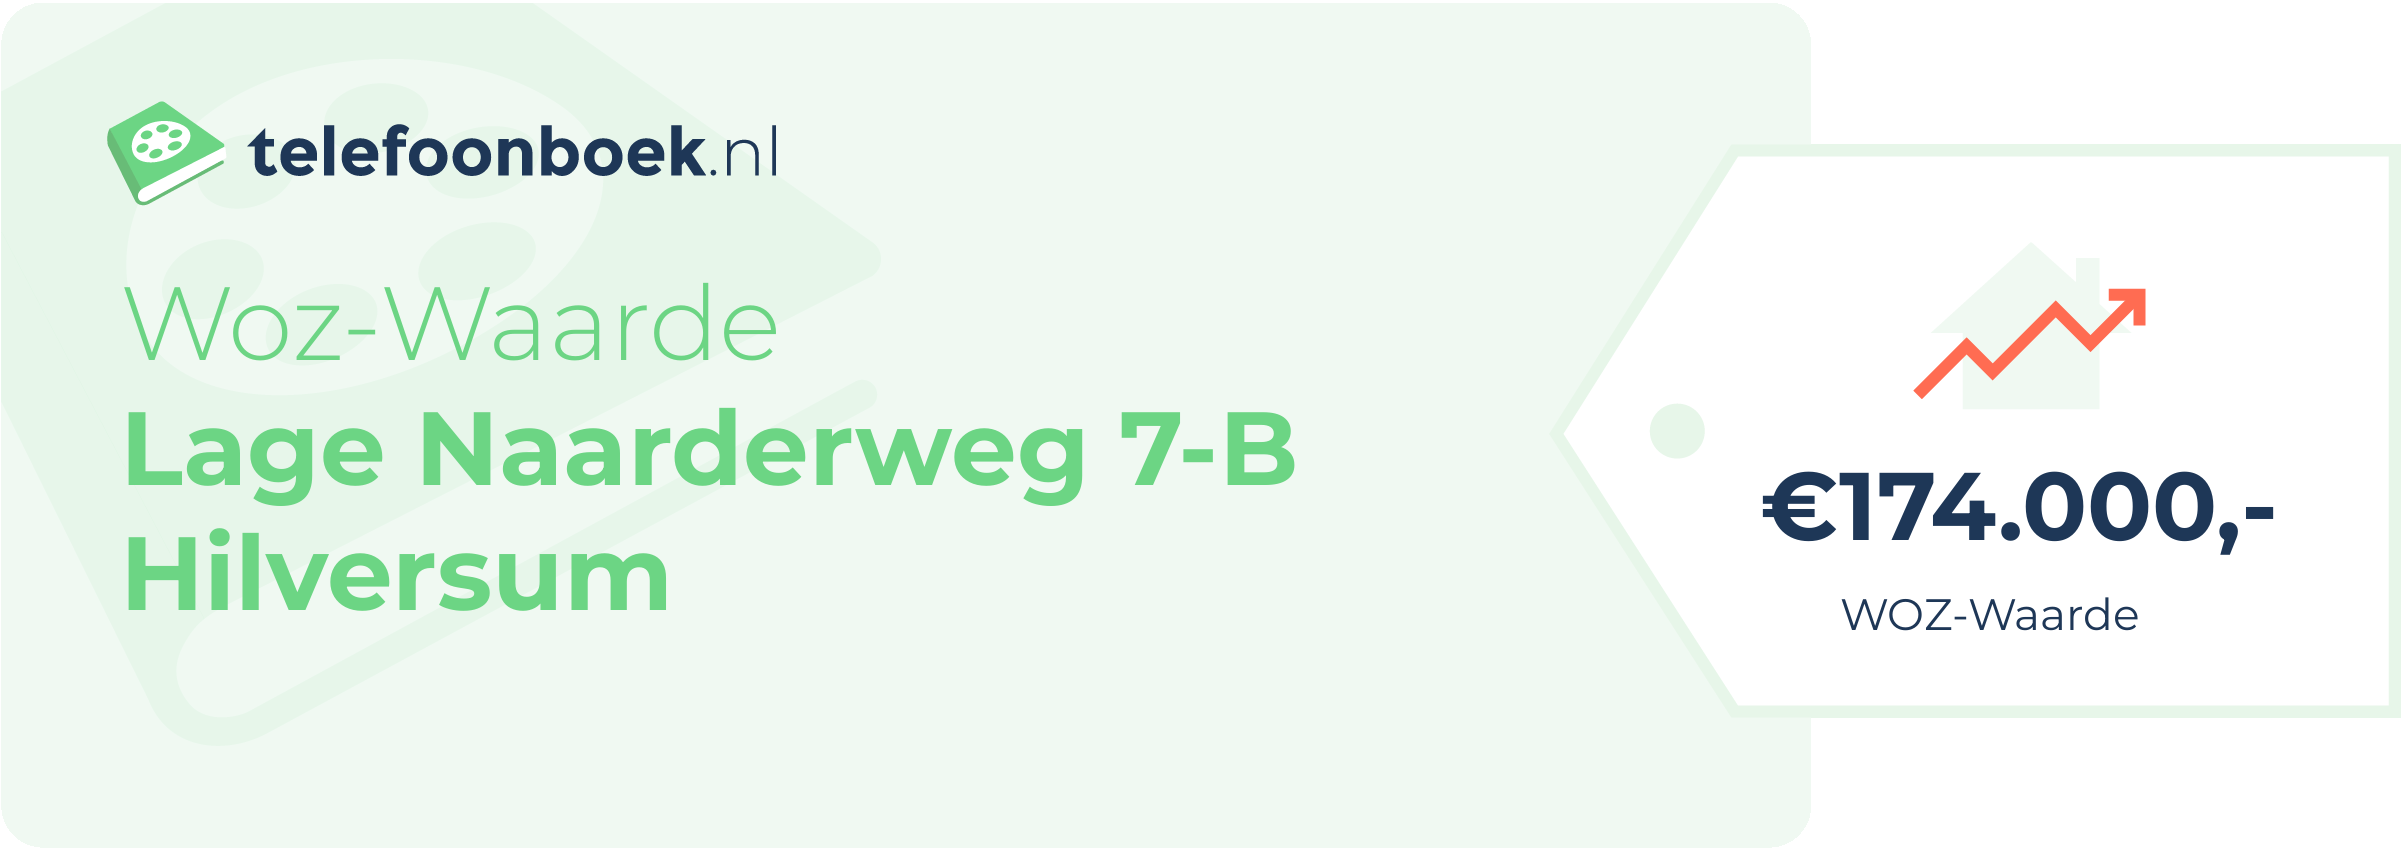 WOZ-waarde Lage Naarderweg 7-B Hilversum